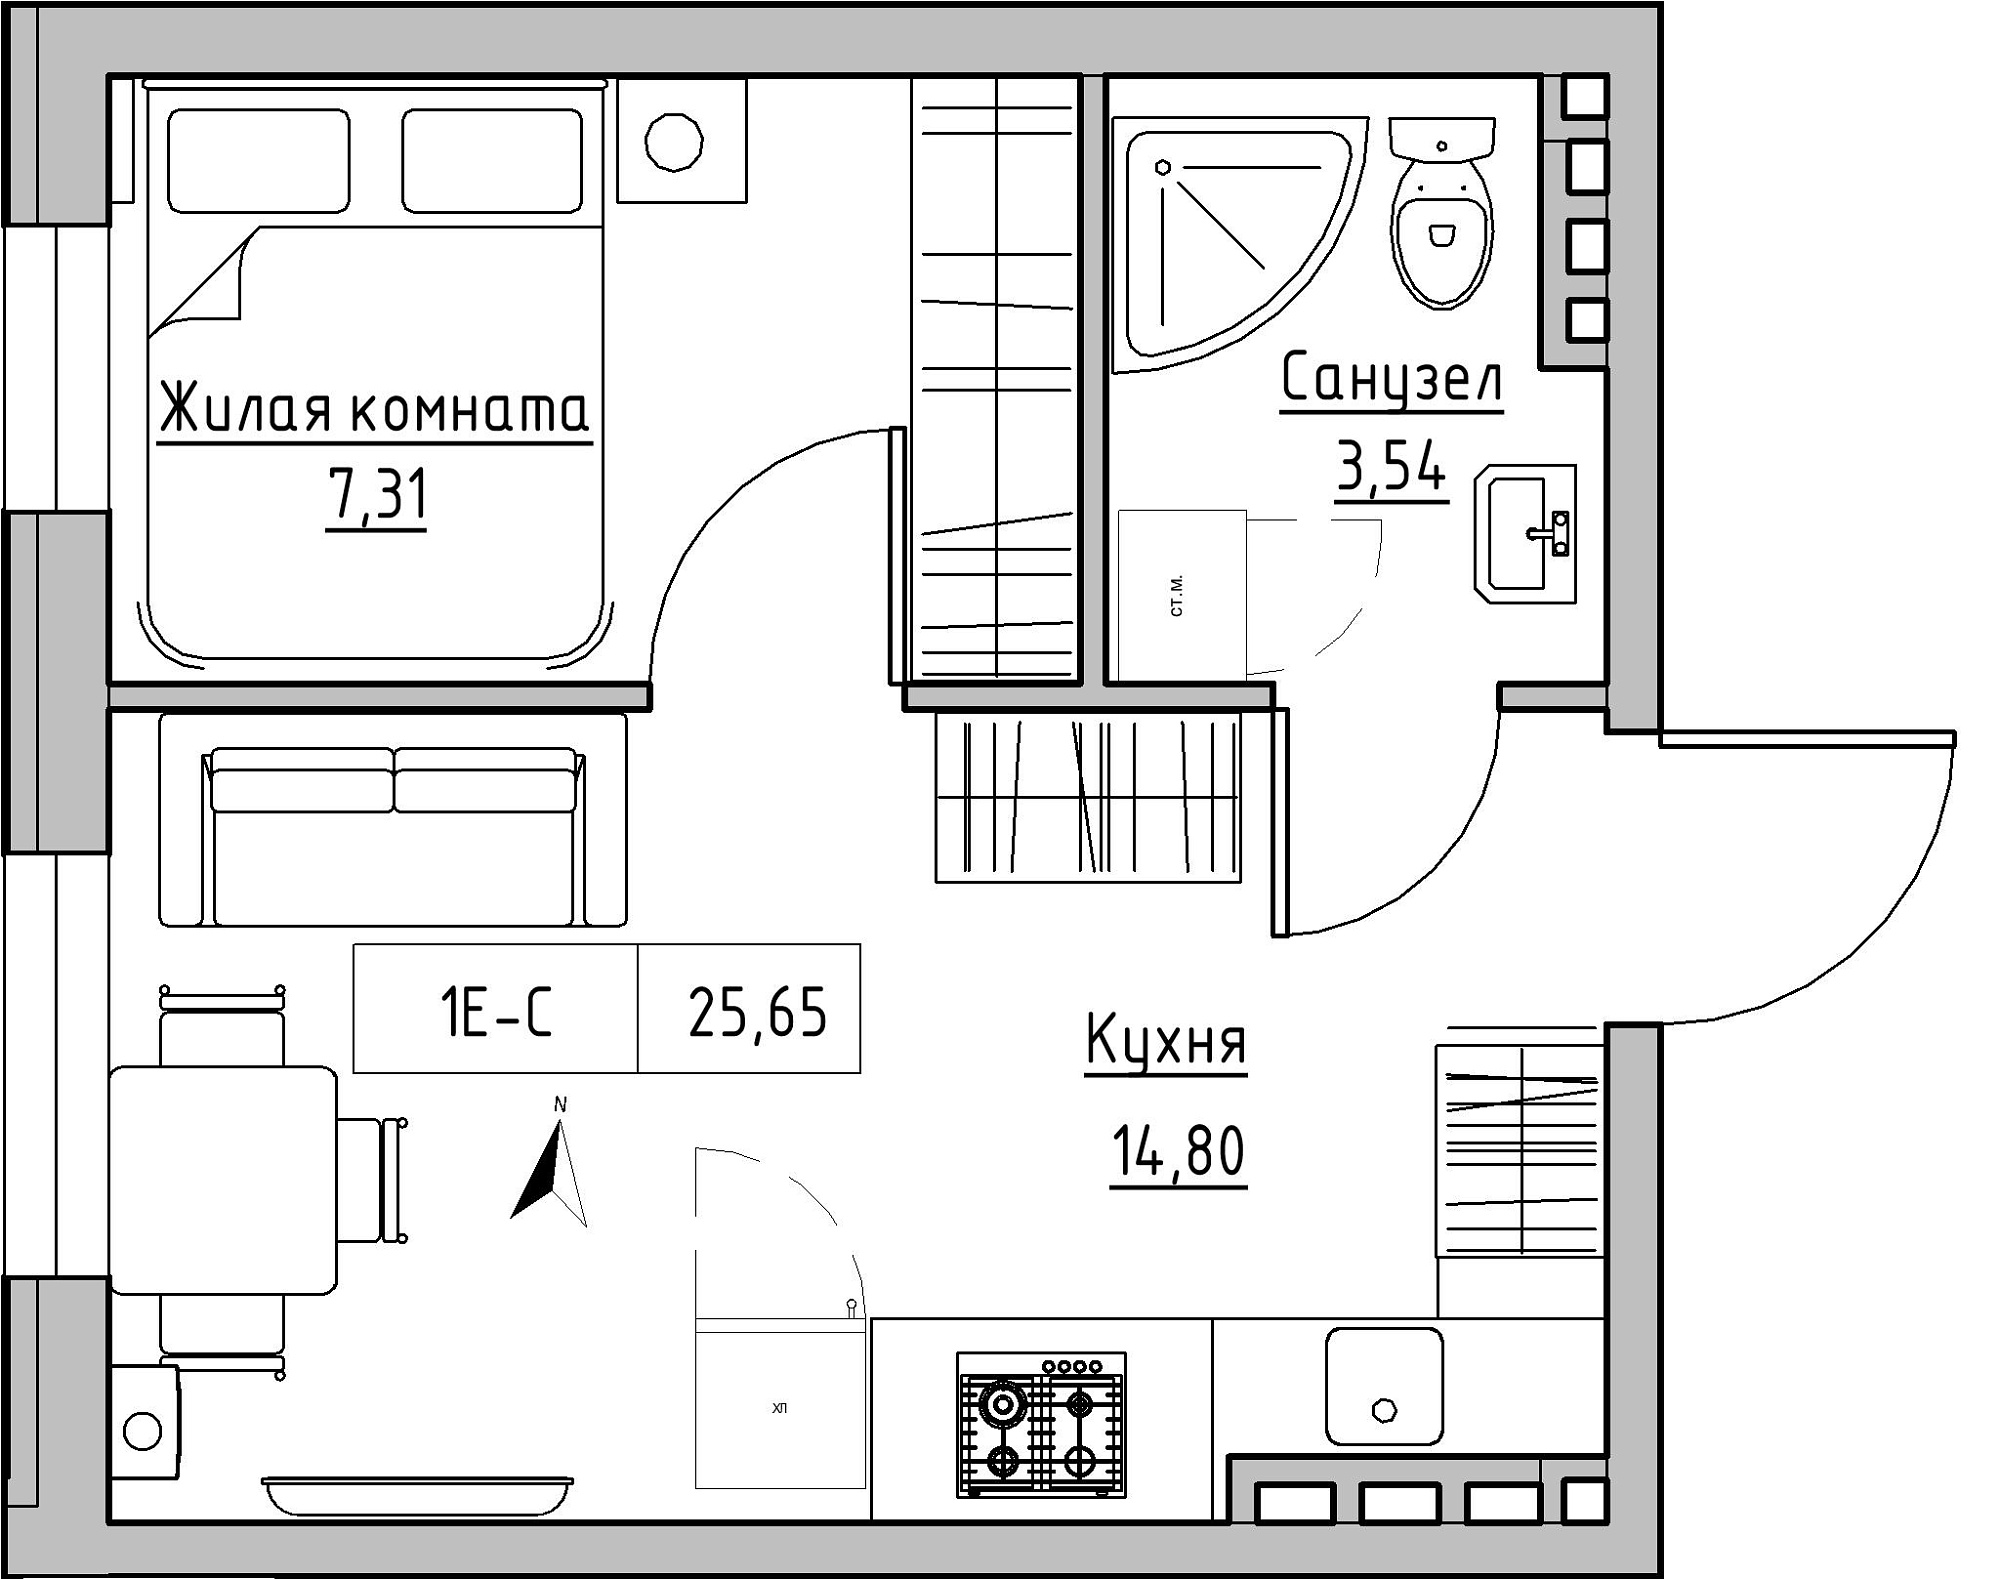 Планировка 1-к квартира площей 25.65м2, KS-024-03/0014.